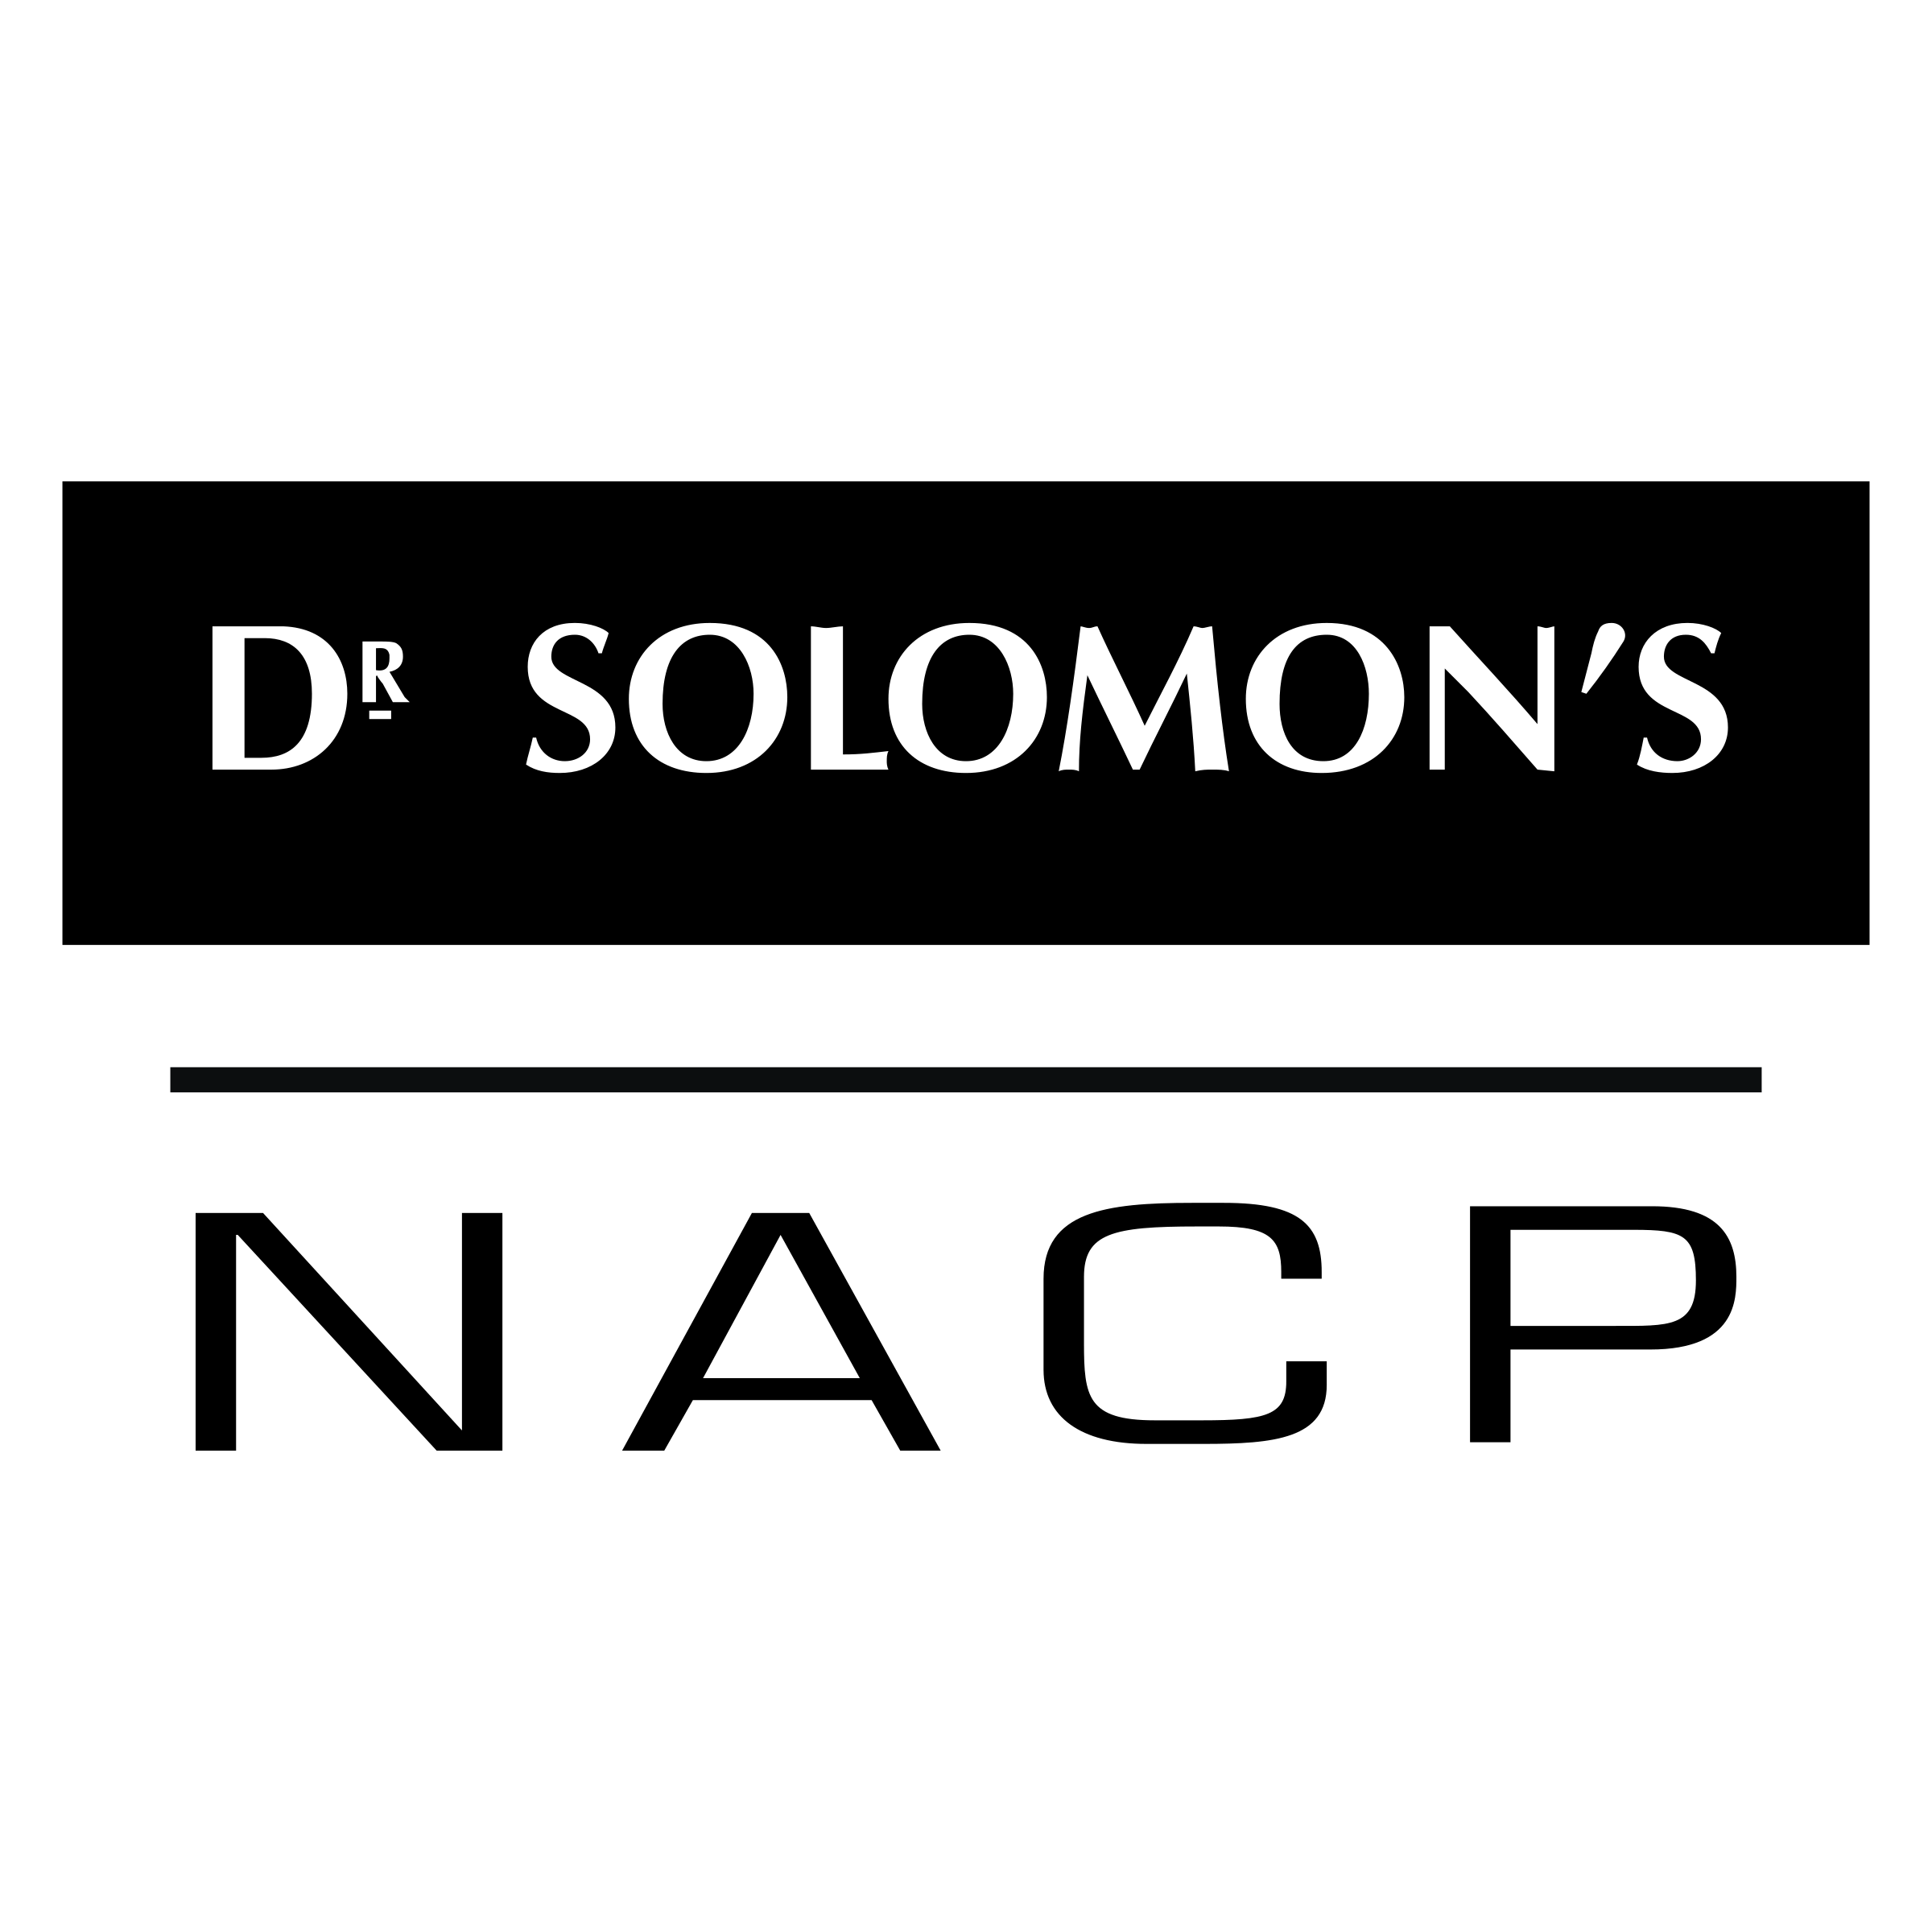 Solomon Logo - Dr Solomon's Logo PNG Transparent & SVG Vector